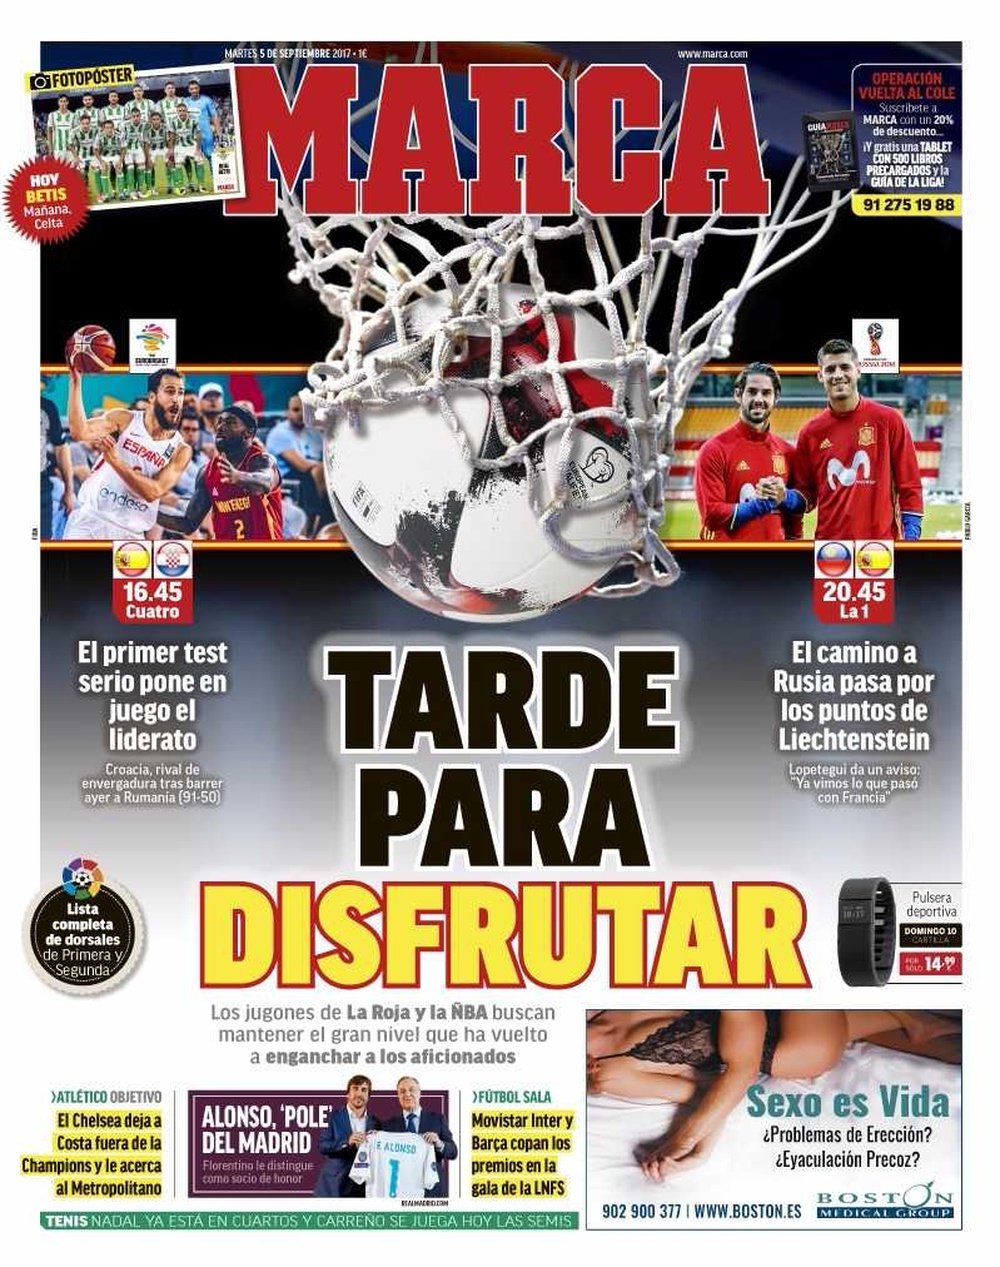 La Une du quotidien sportif espagnol 'Marca', du 05-09-17. Marca